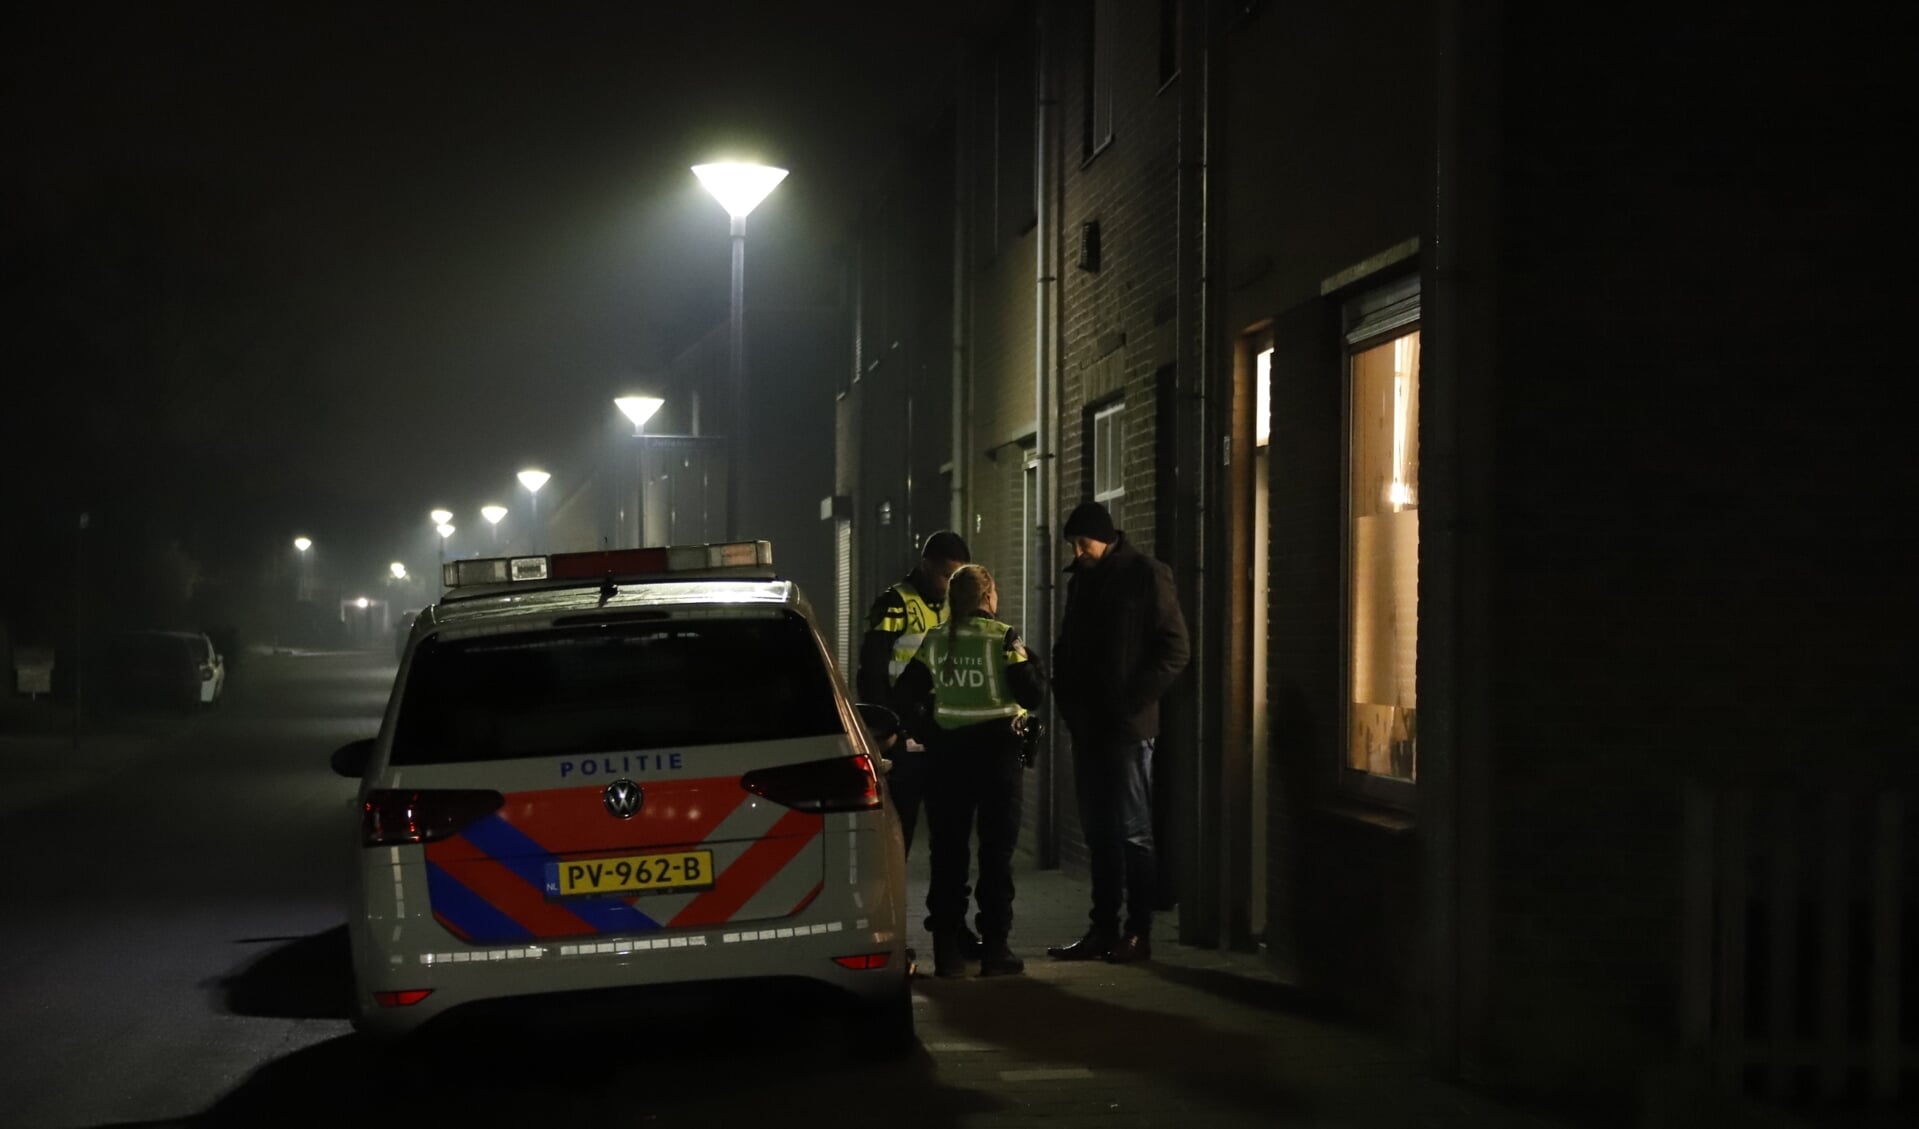 Gewapende woningoverval in Boxmeer, politie zoekt donkergetinte jongeren.